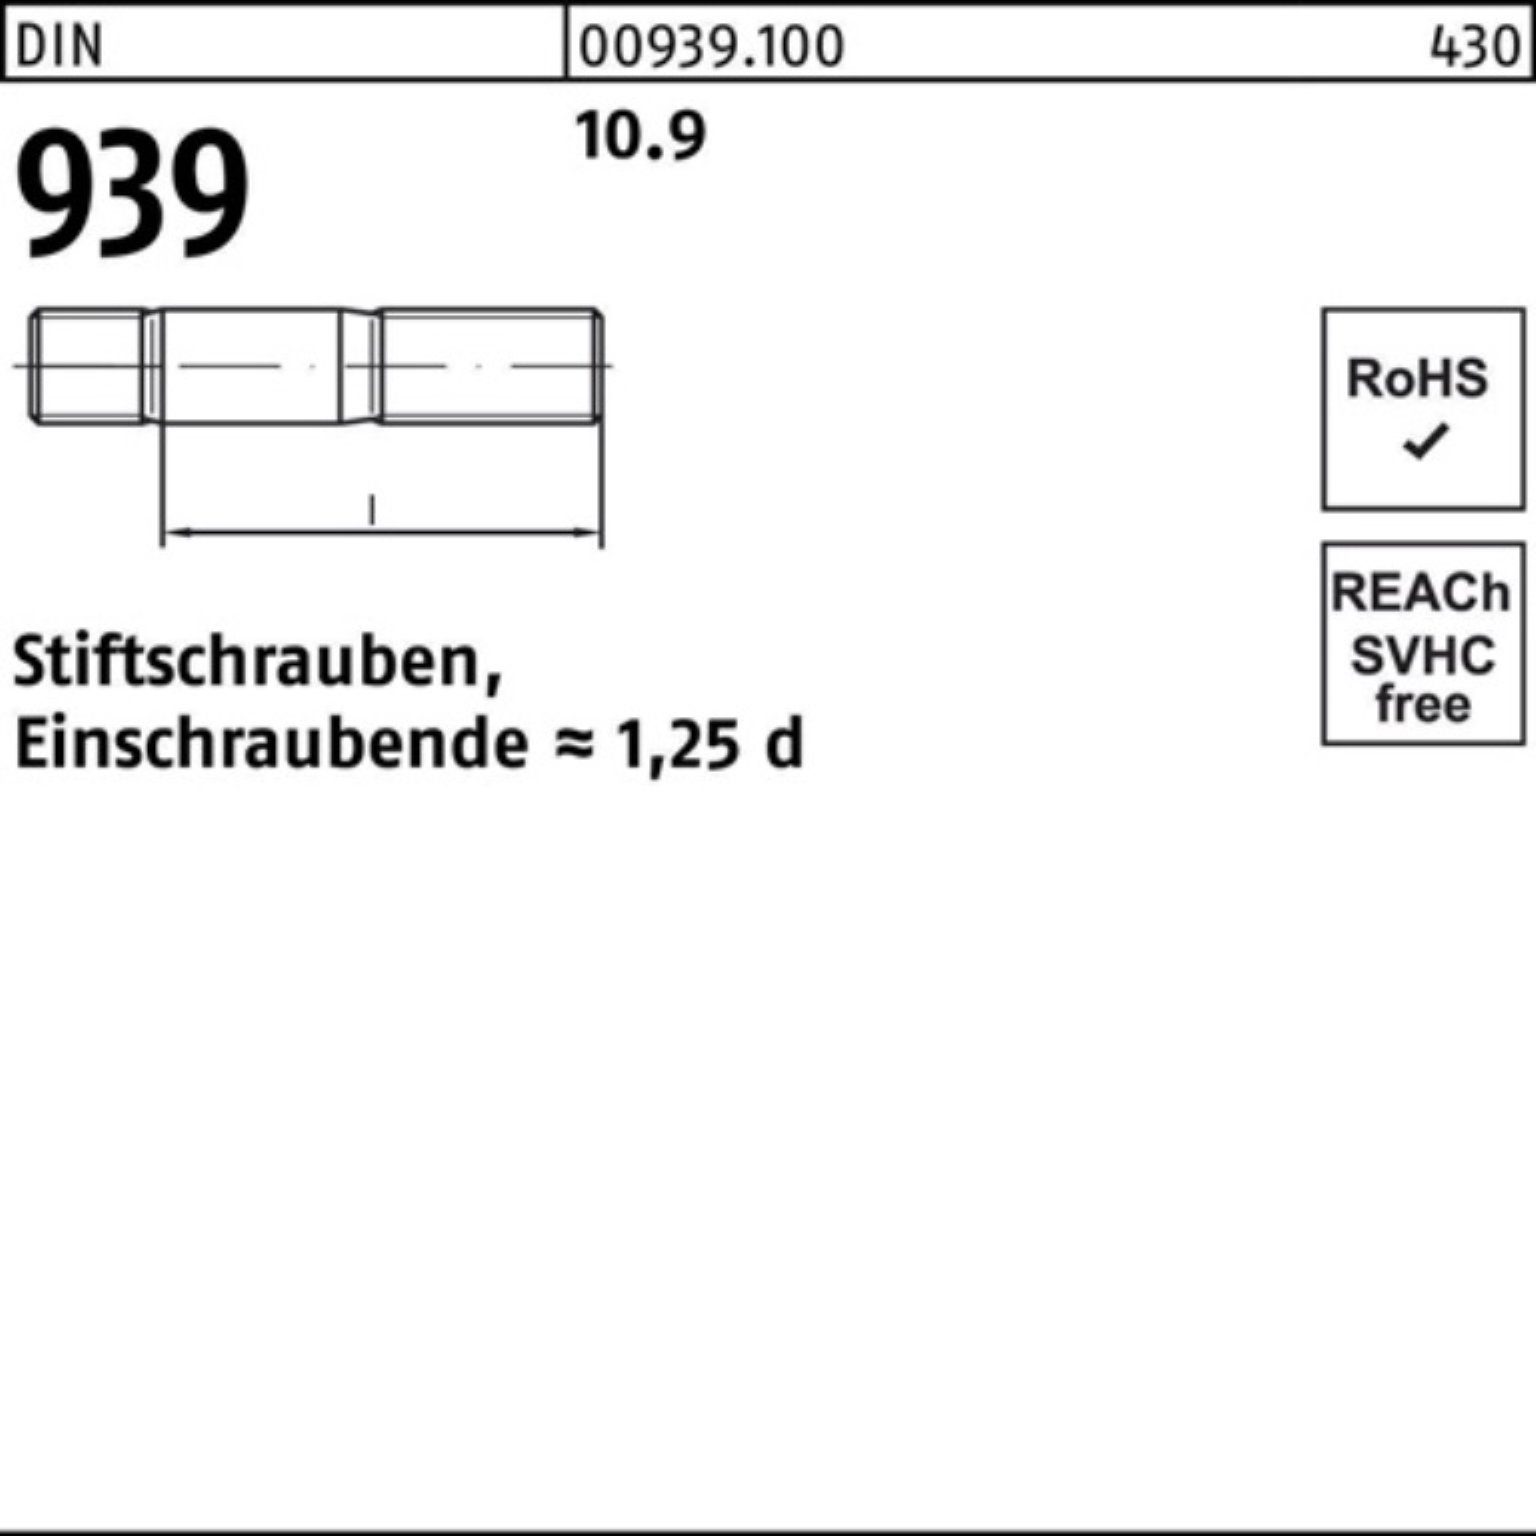 Pack DIN 25 Stiftschraube 10.9 35 Stiftschraube M16x Reyher 100er Einschraubende=1,25d 939